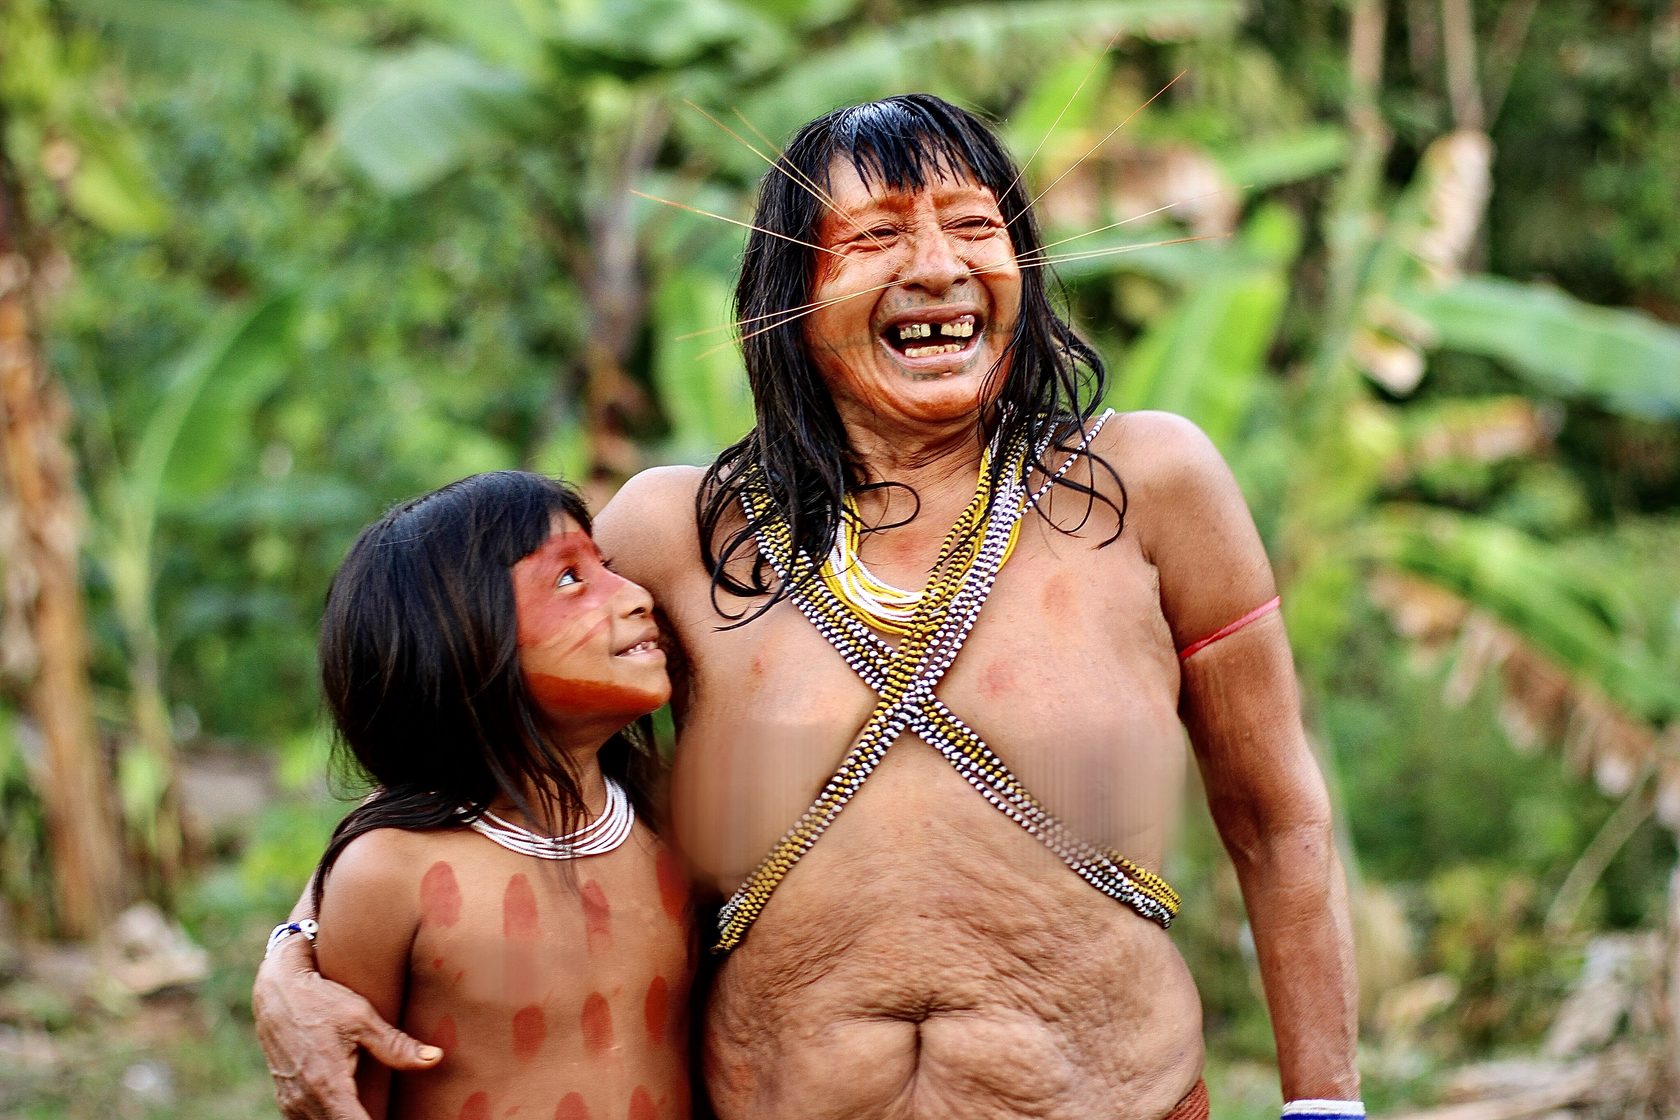 дикие племена с голыми женщинами фото 40